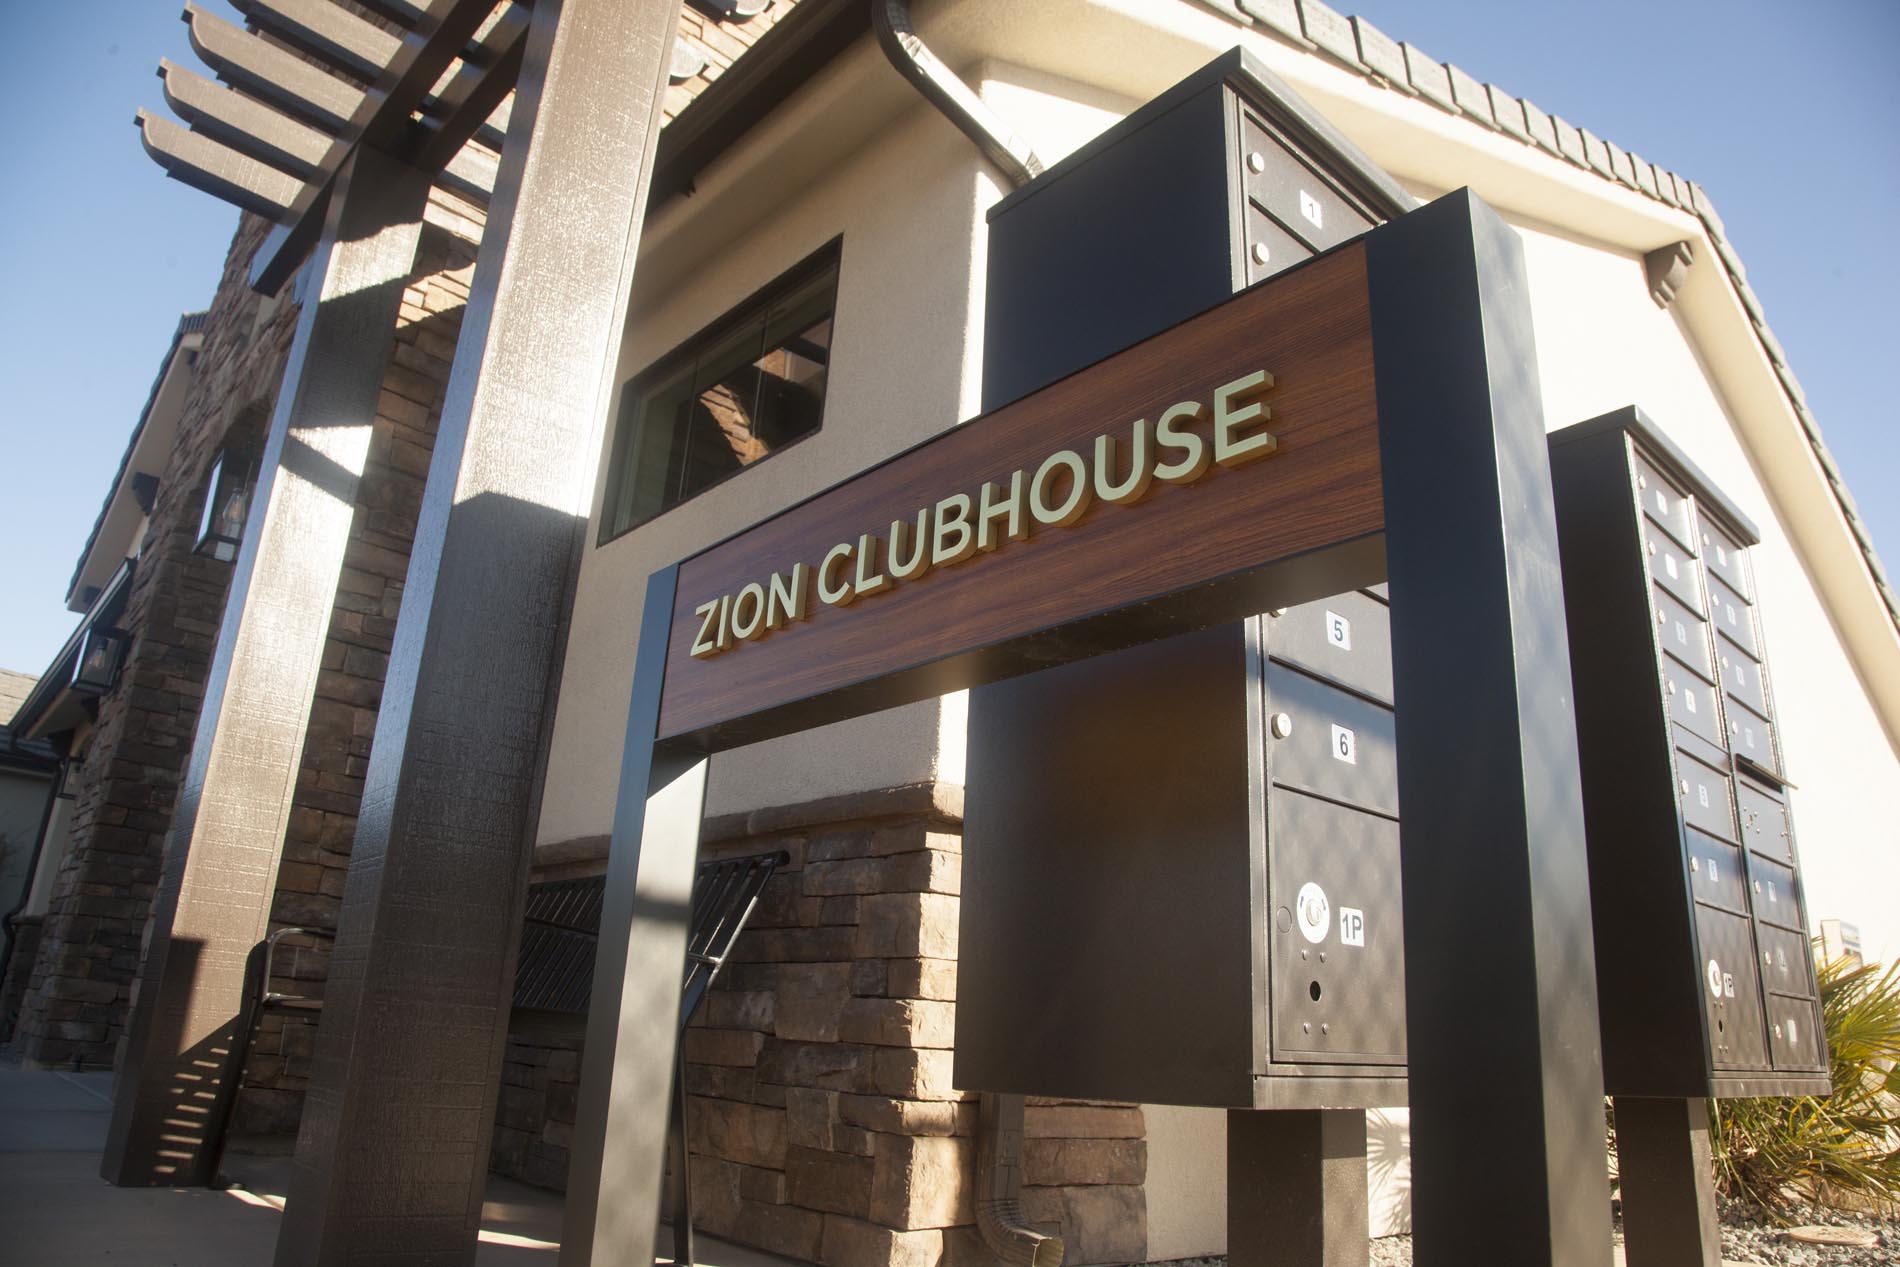 Ovation Sienna Hills Zion Club House Sign